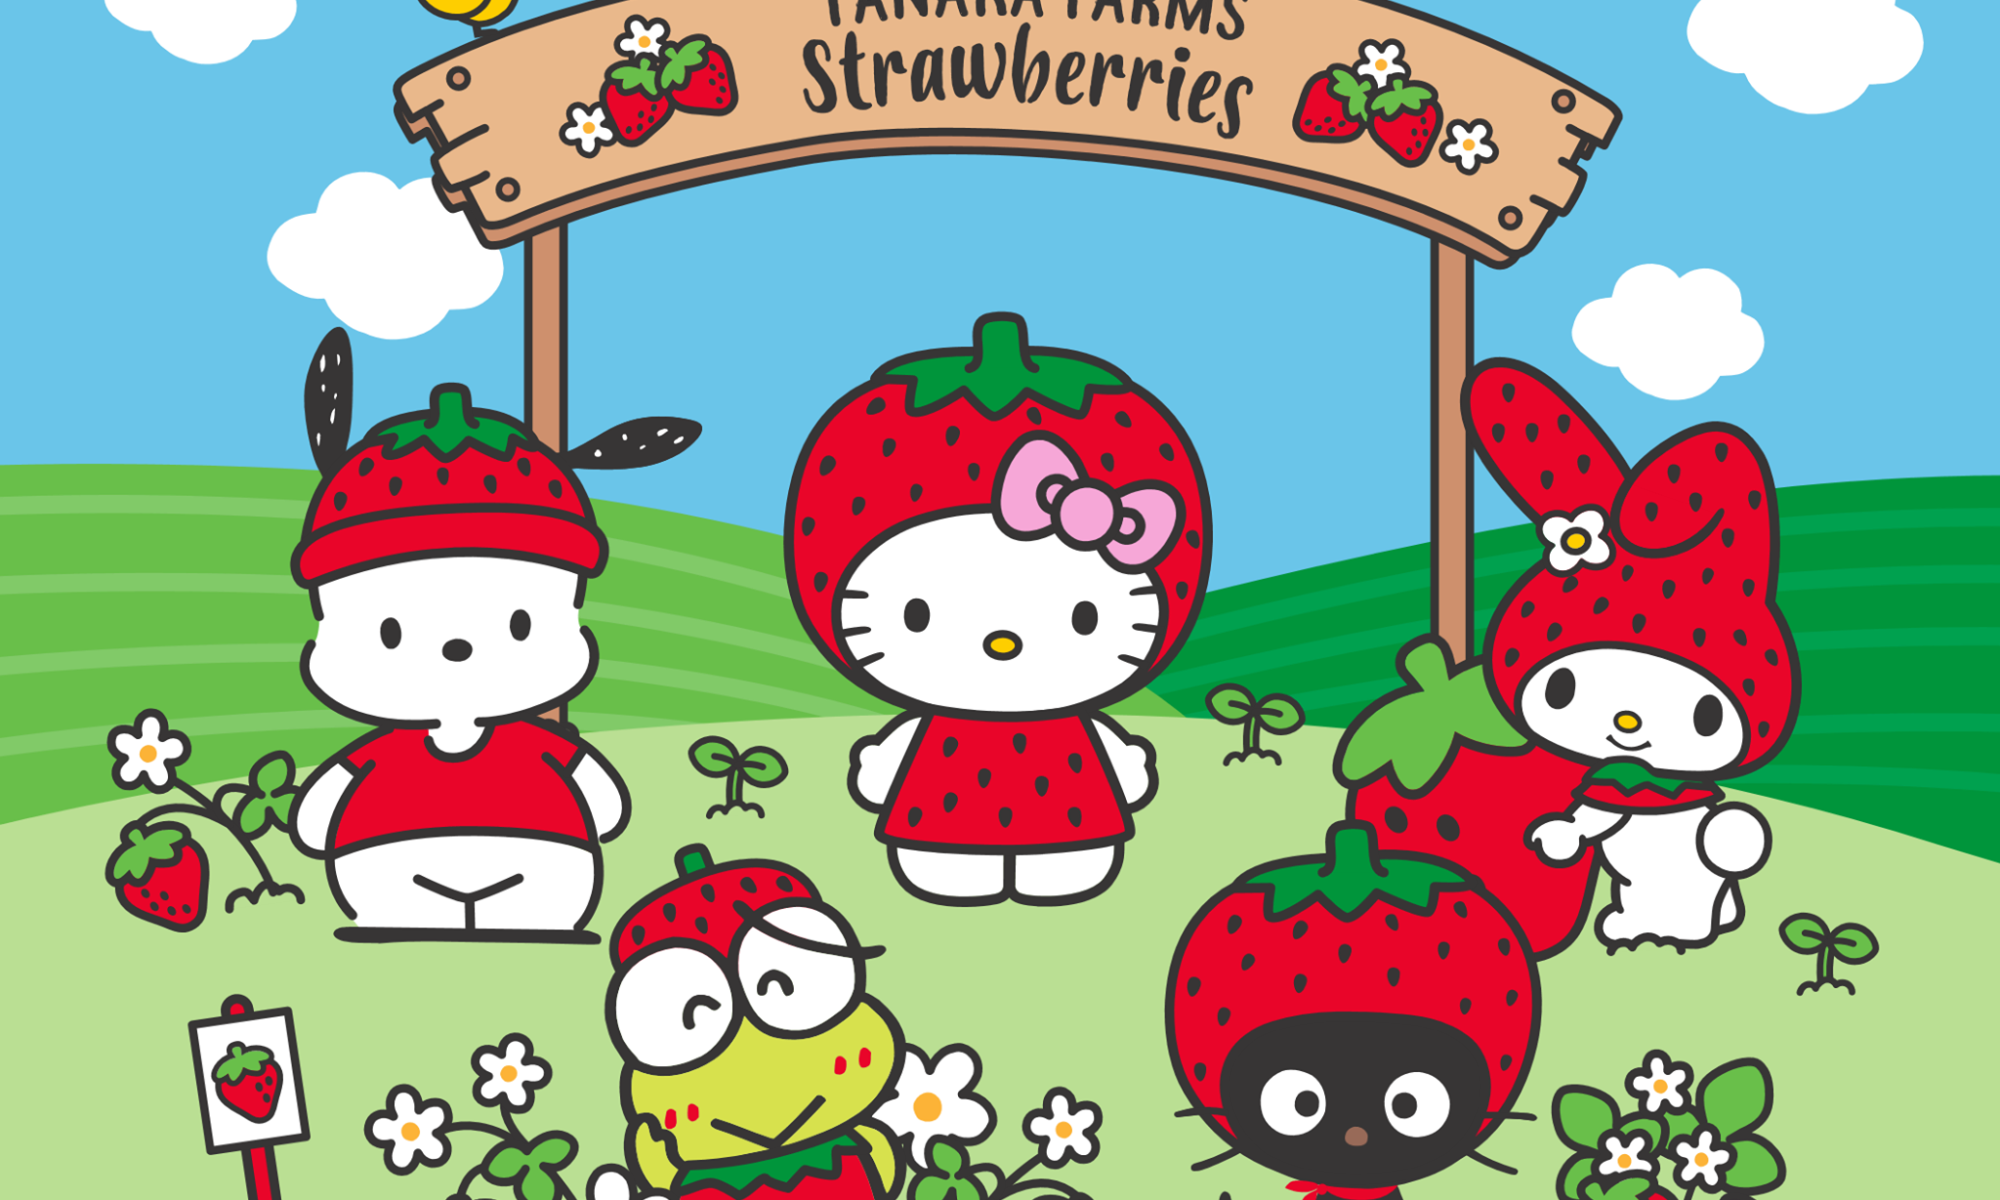 Hello Kitty and Tanaka Farms Strawberry season collaboration